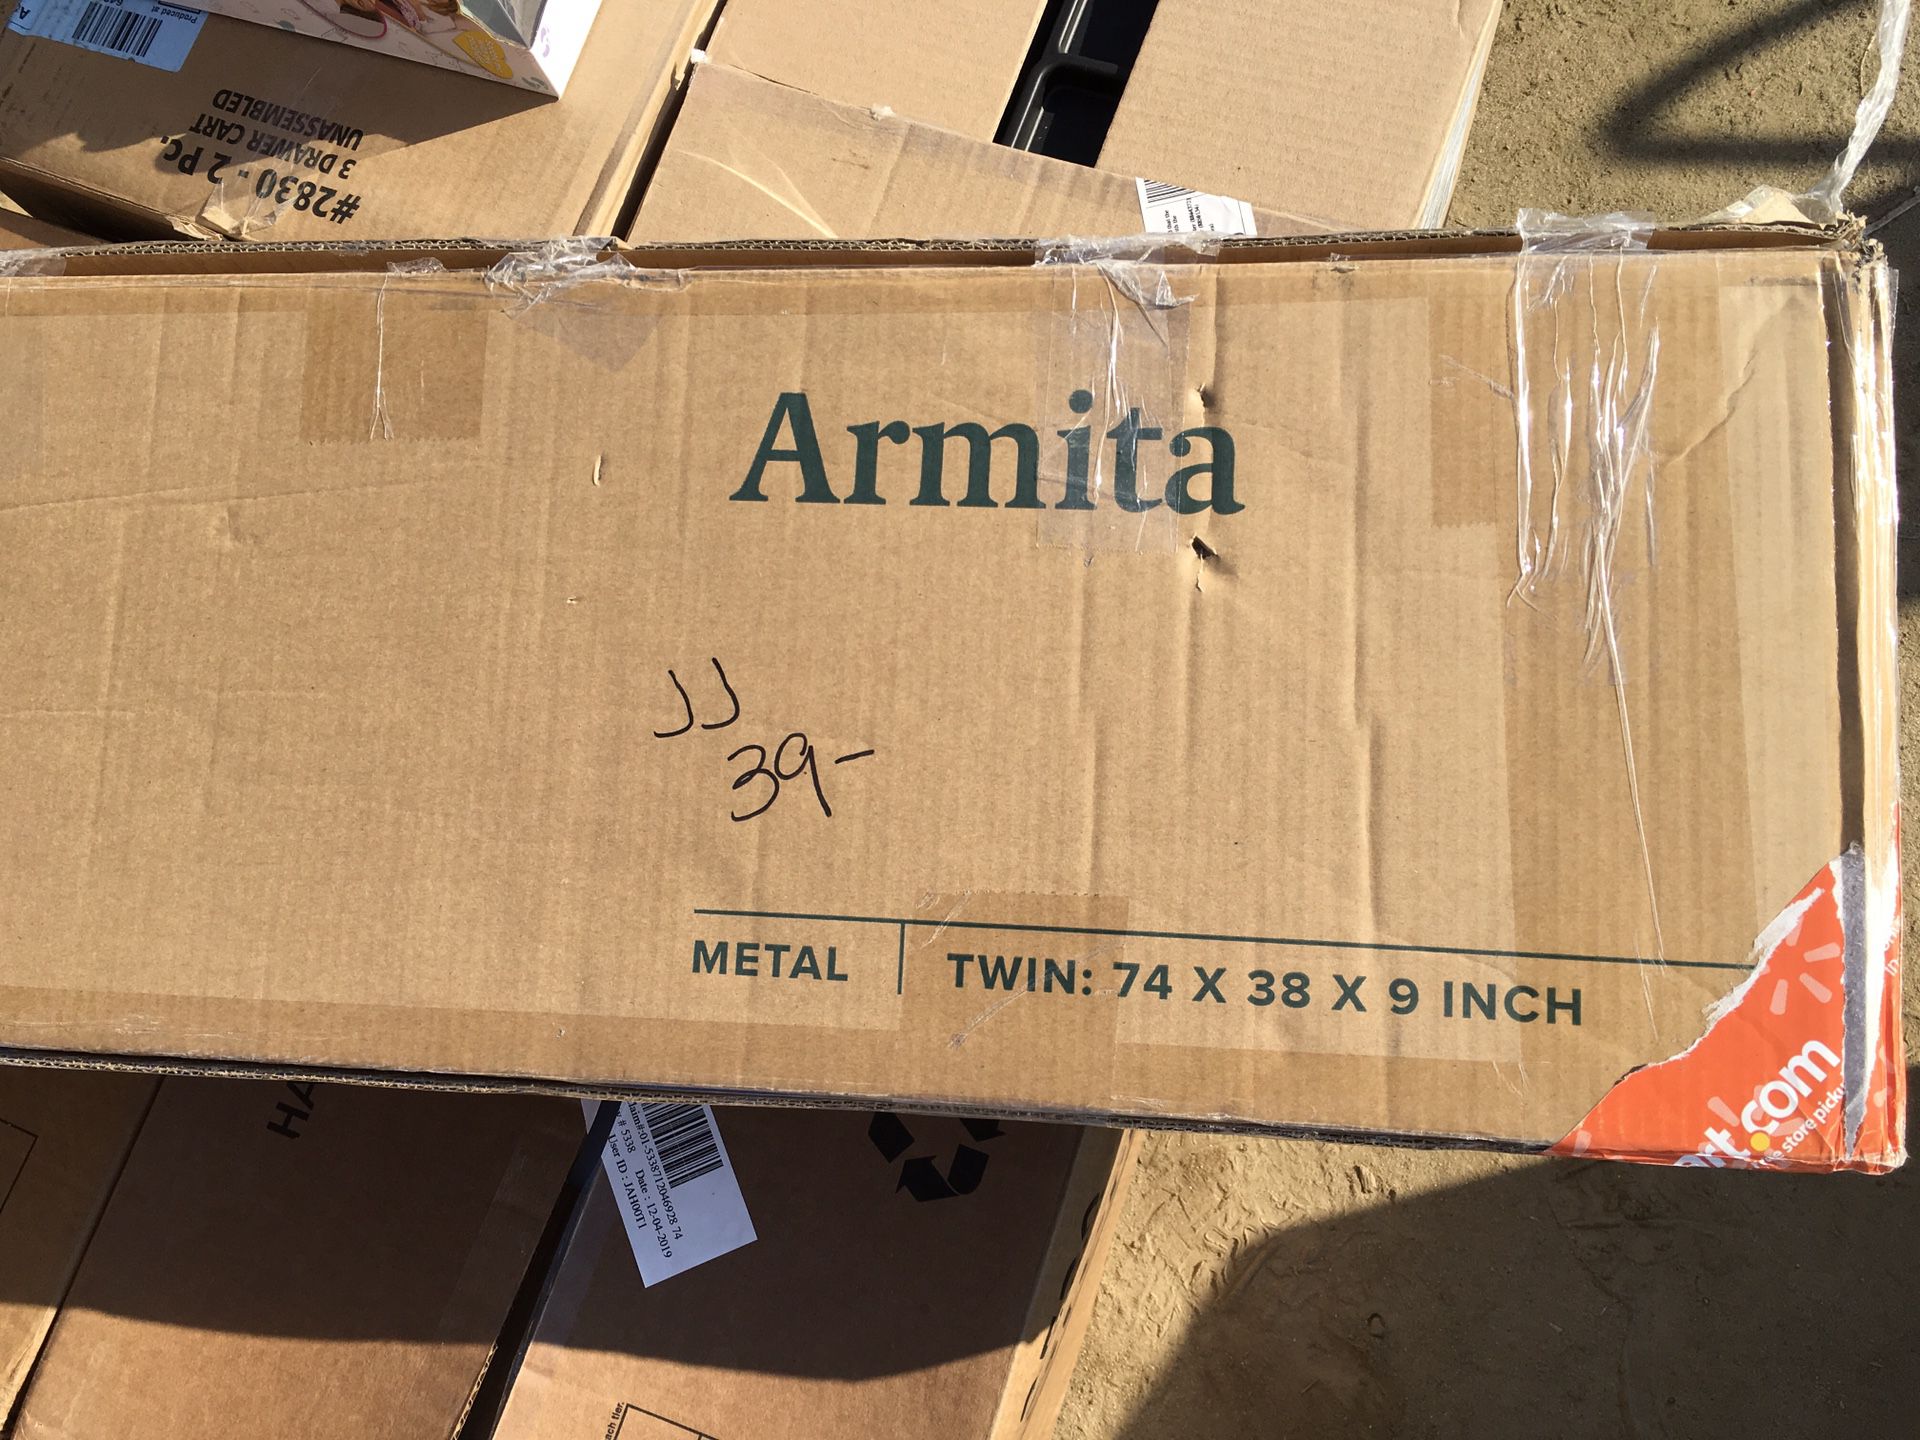 Amrita metal twin bed frame